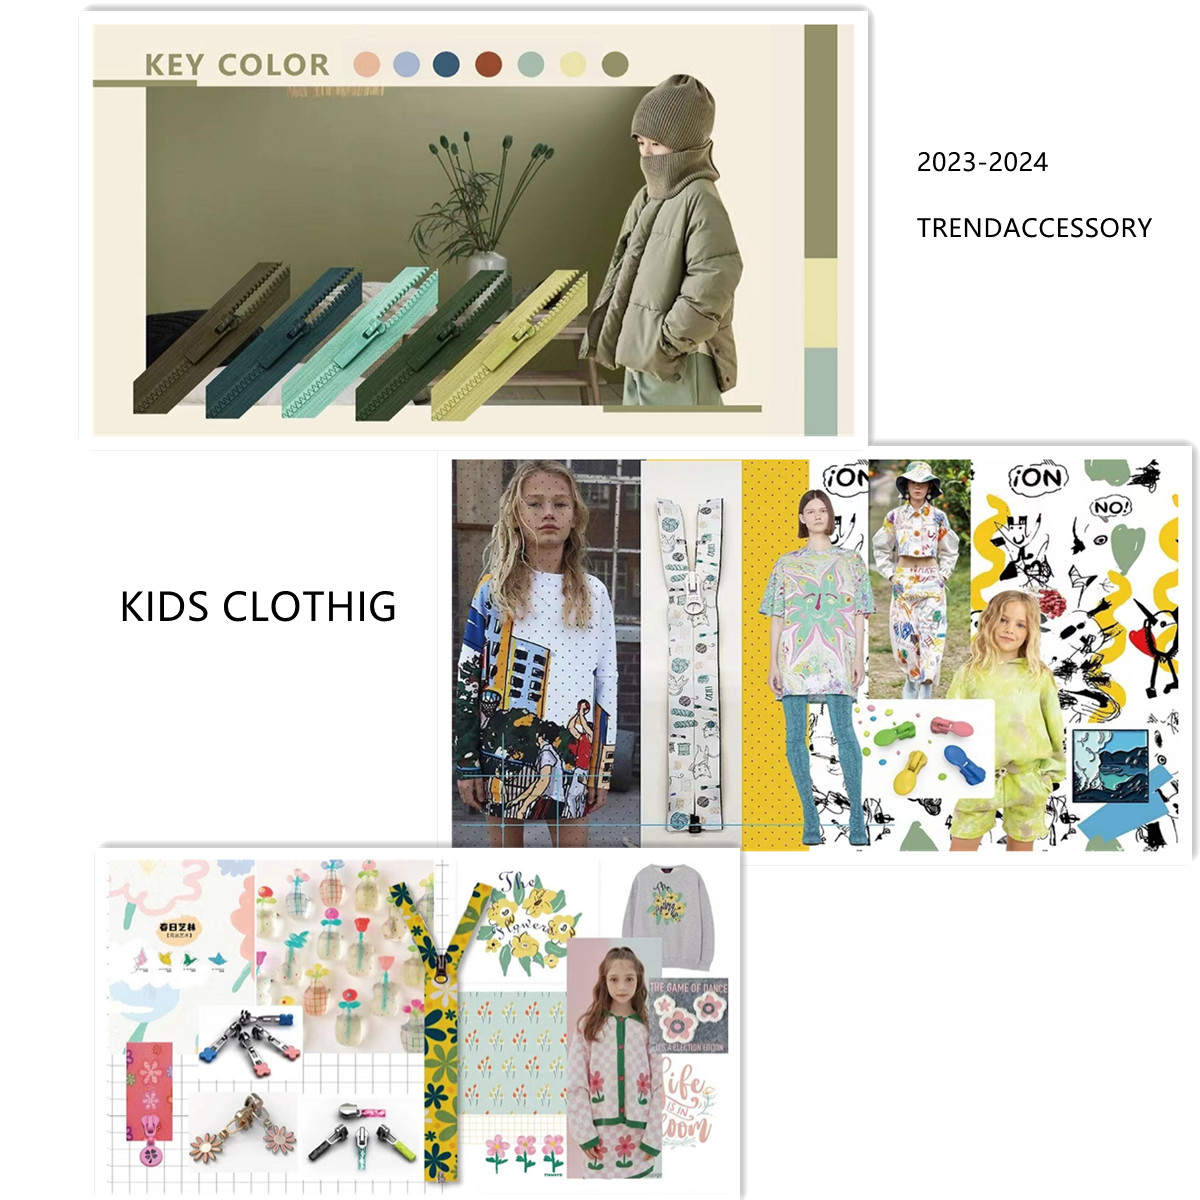 Savez-vous quel est l'accessoire tendance 2023-2024 pour les vêtements pour enfants (collection 1)